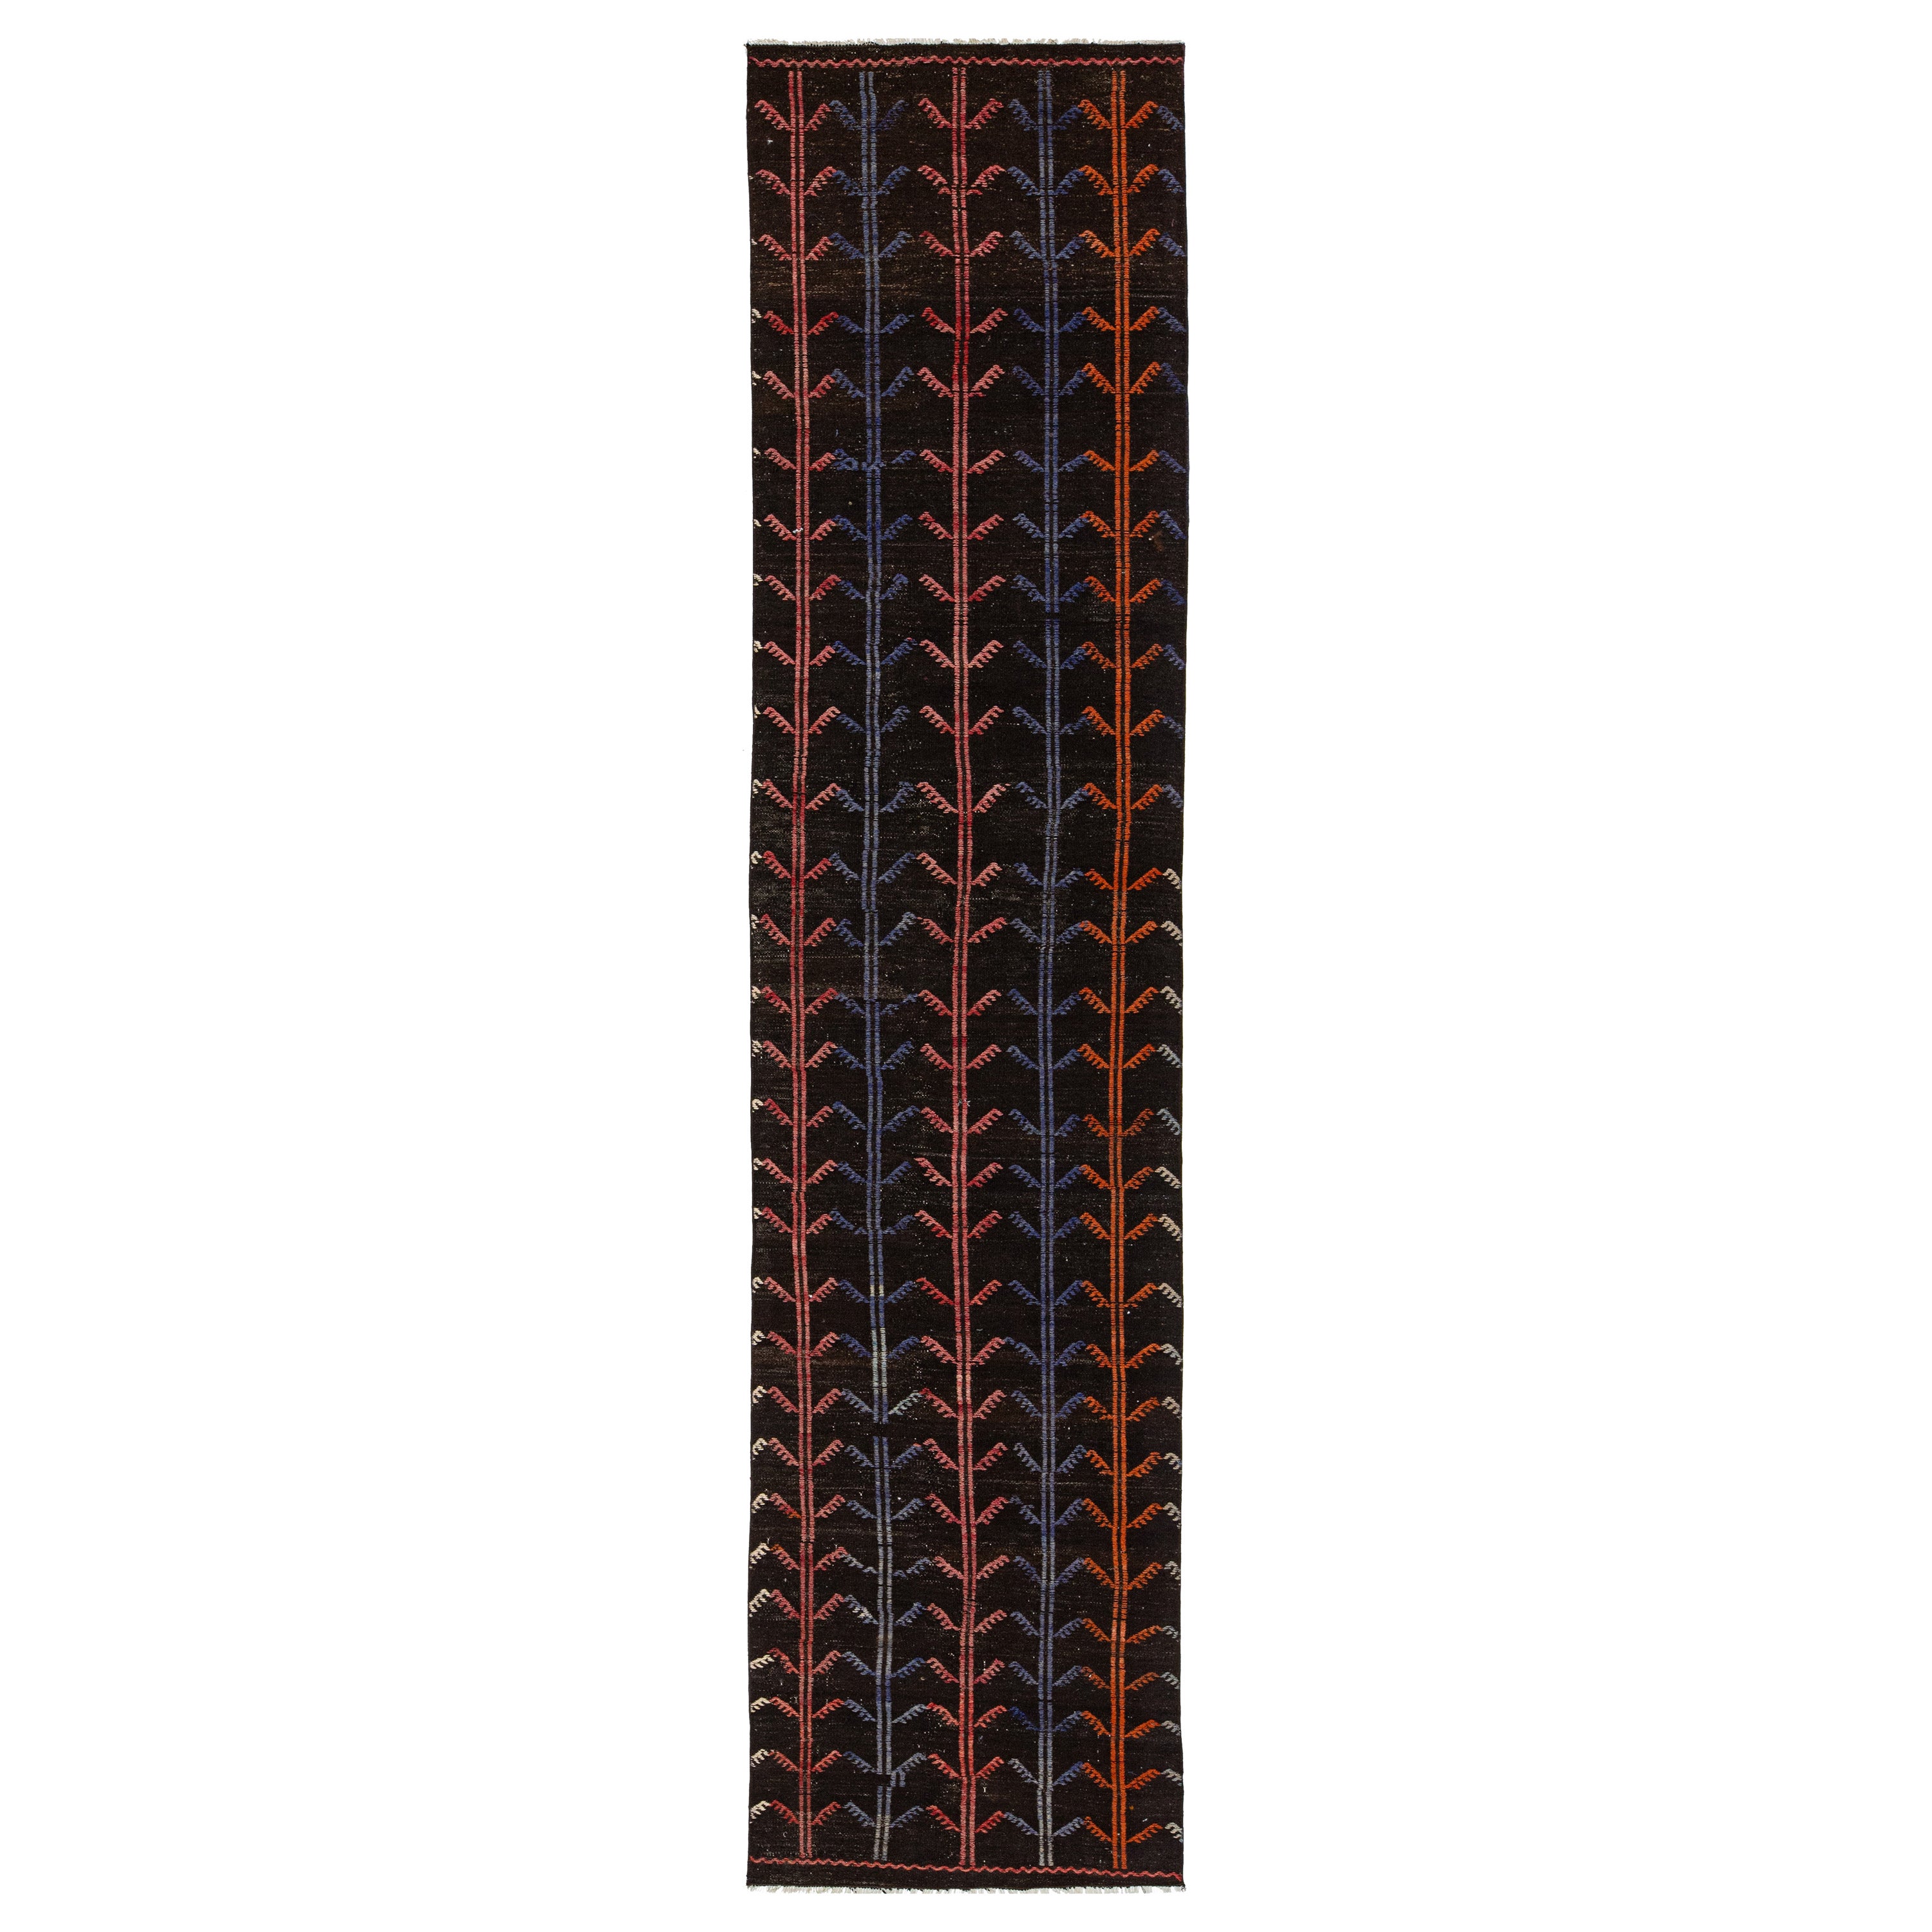 Rug & Kilim vintage en laine de Turquie, brun foncé, avec designs allover